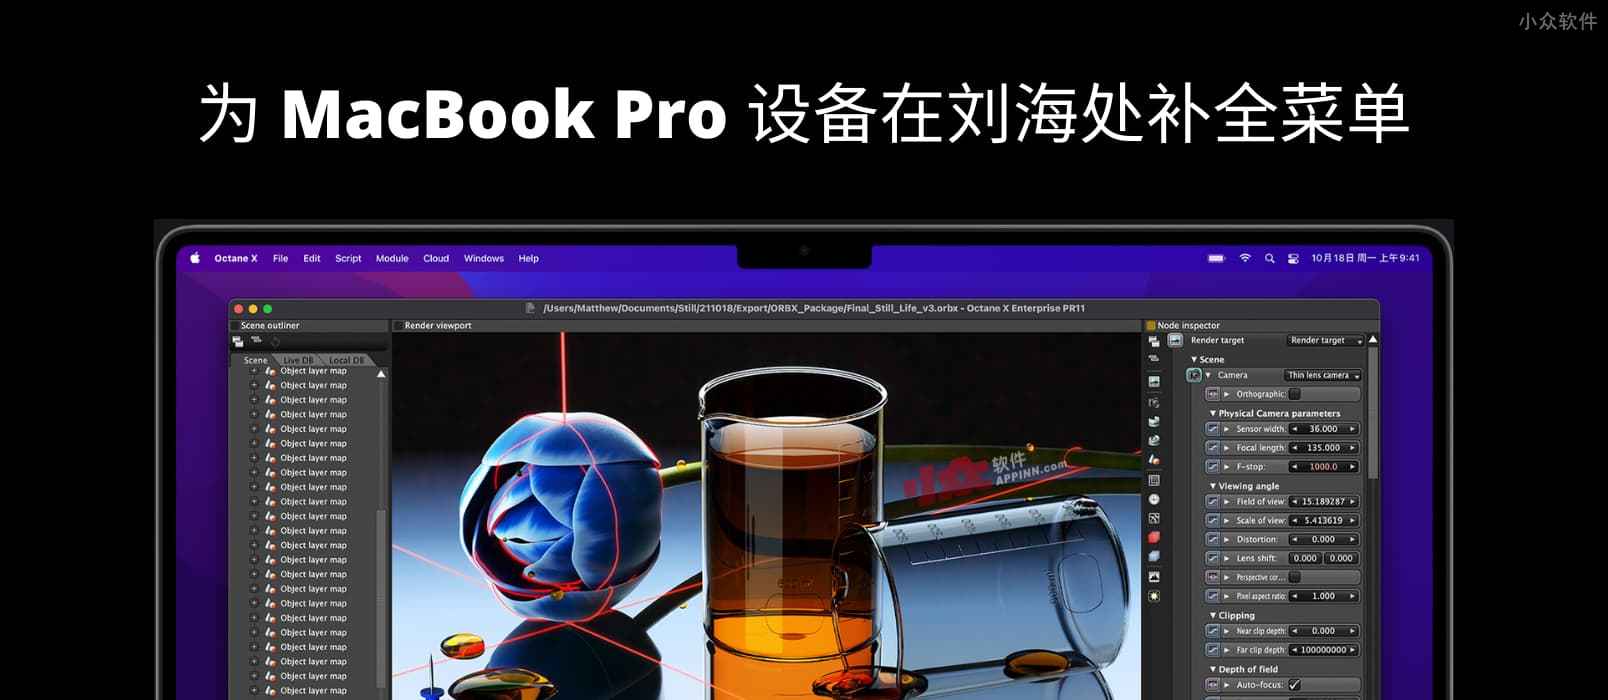 刘海儿补全计划 – 为 MacBook Pro 设备在刘海处补全菜单，一个被苹果拒绝的应用